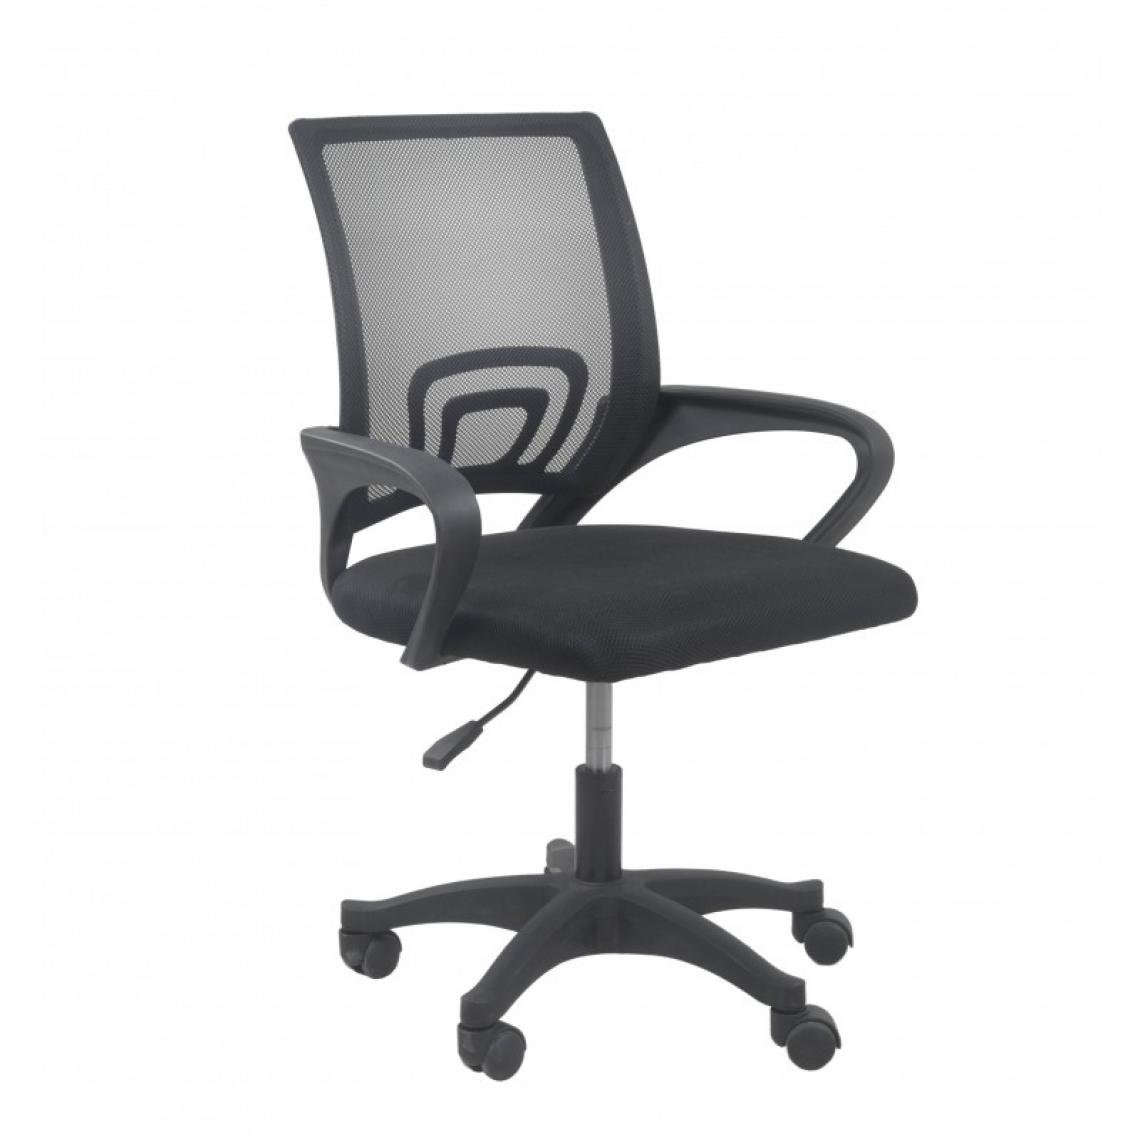 Hucoco - CARISE - Fauteuil de bureau ergonomique - Hauteur ajustable - Avec accoudoirs - Chaise de bureau pivotante - Noir - Chaises